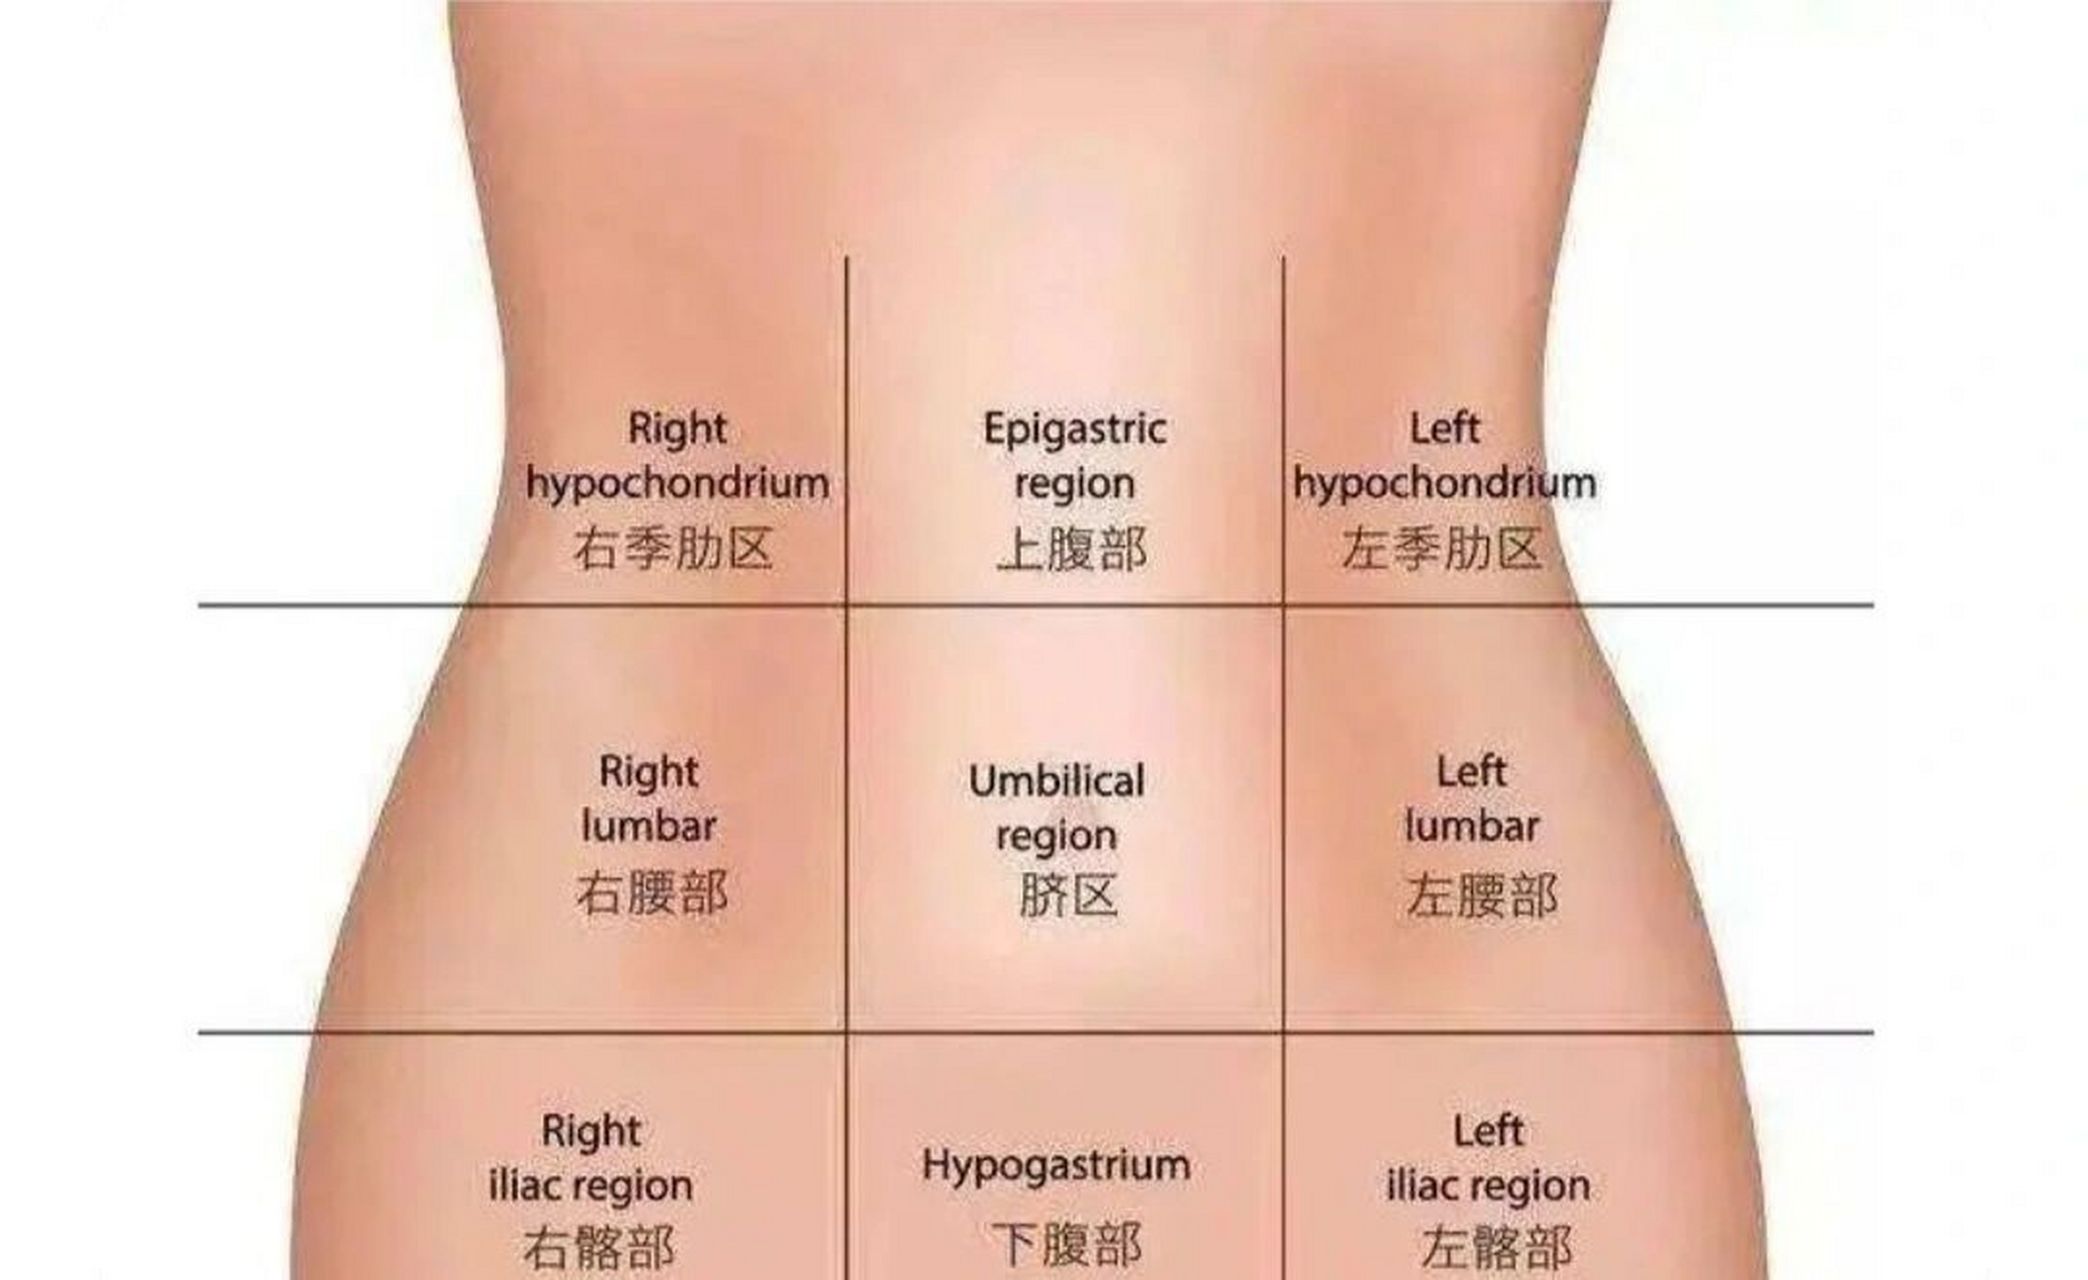 在医学上有腹部九分法,将腹部分为9个区域 左上腹部: 左上腹部的位置